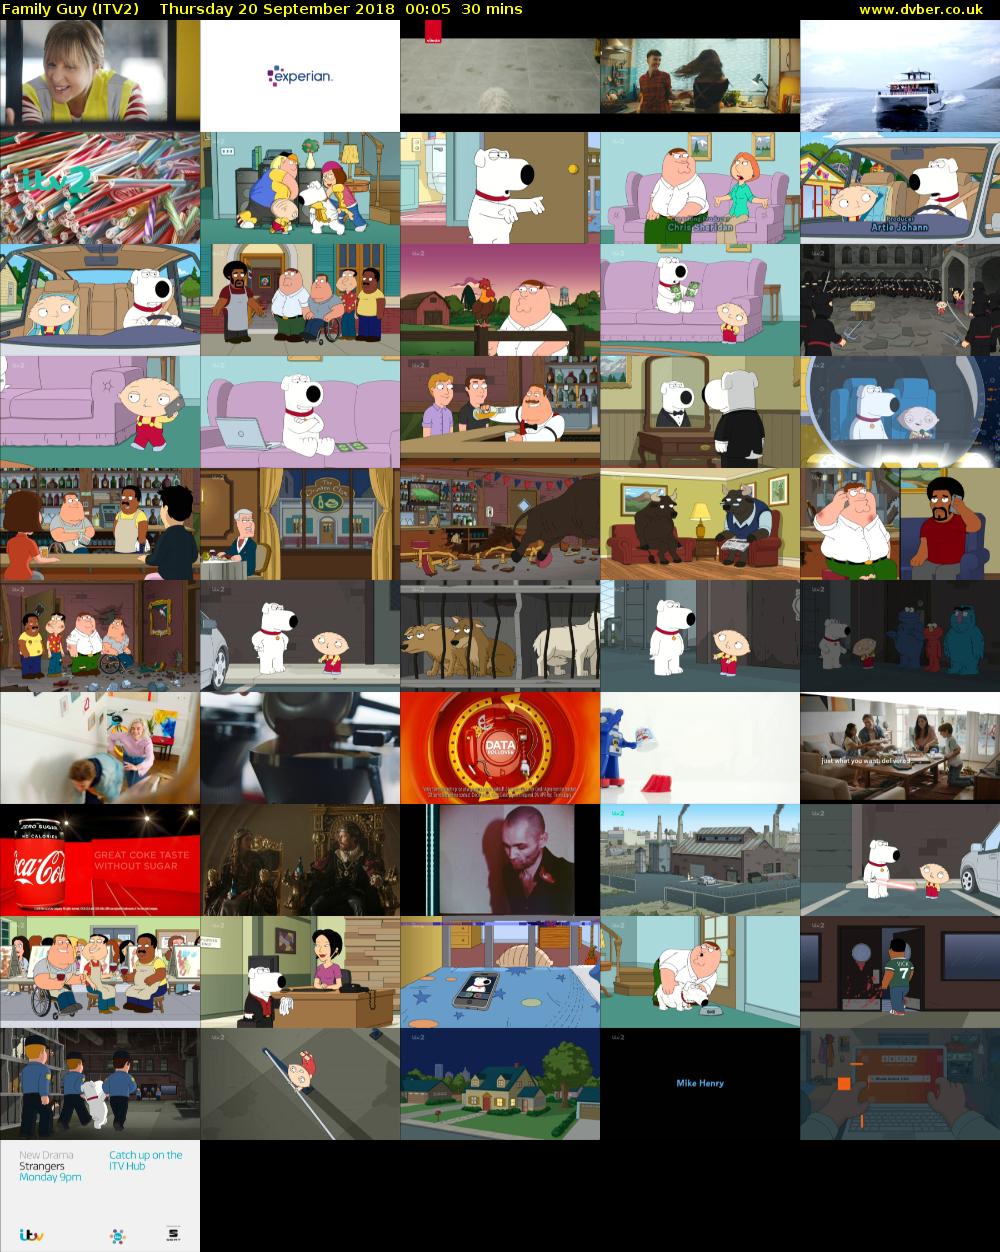 Family Guy (ITV2) Thursday 20 September 2018 00:05 - 00:35